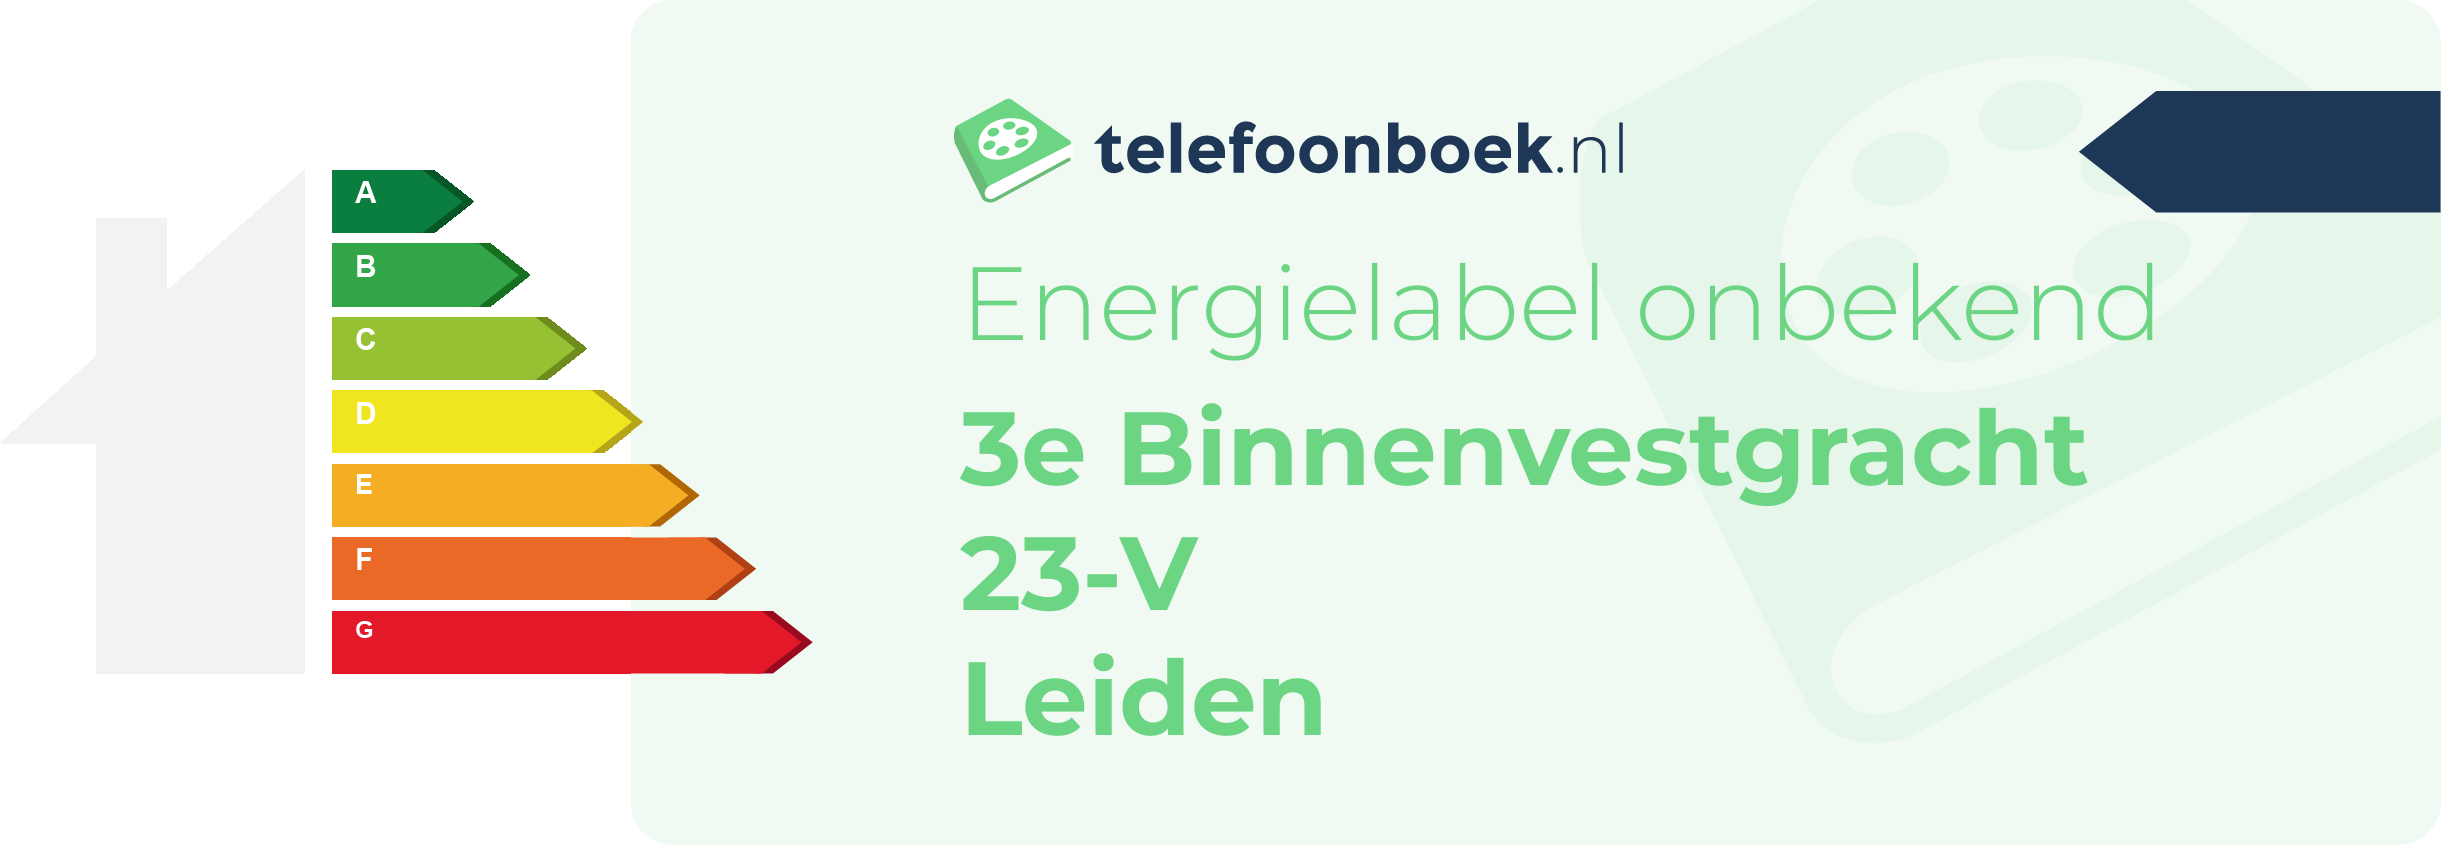 Energielabel 3e Binnenvestgracht 23-V Leiden